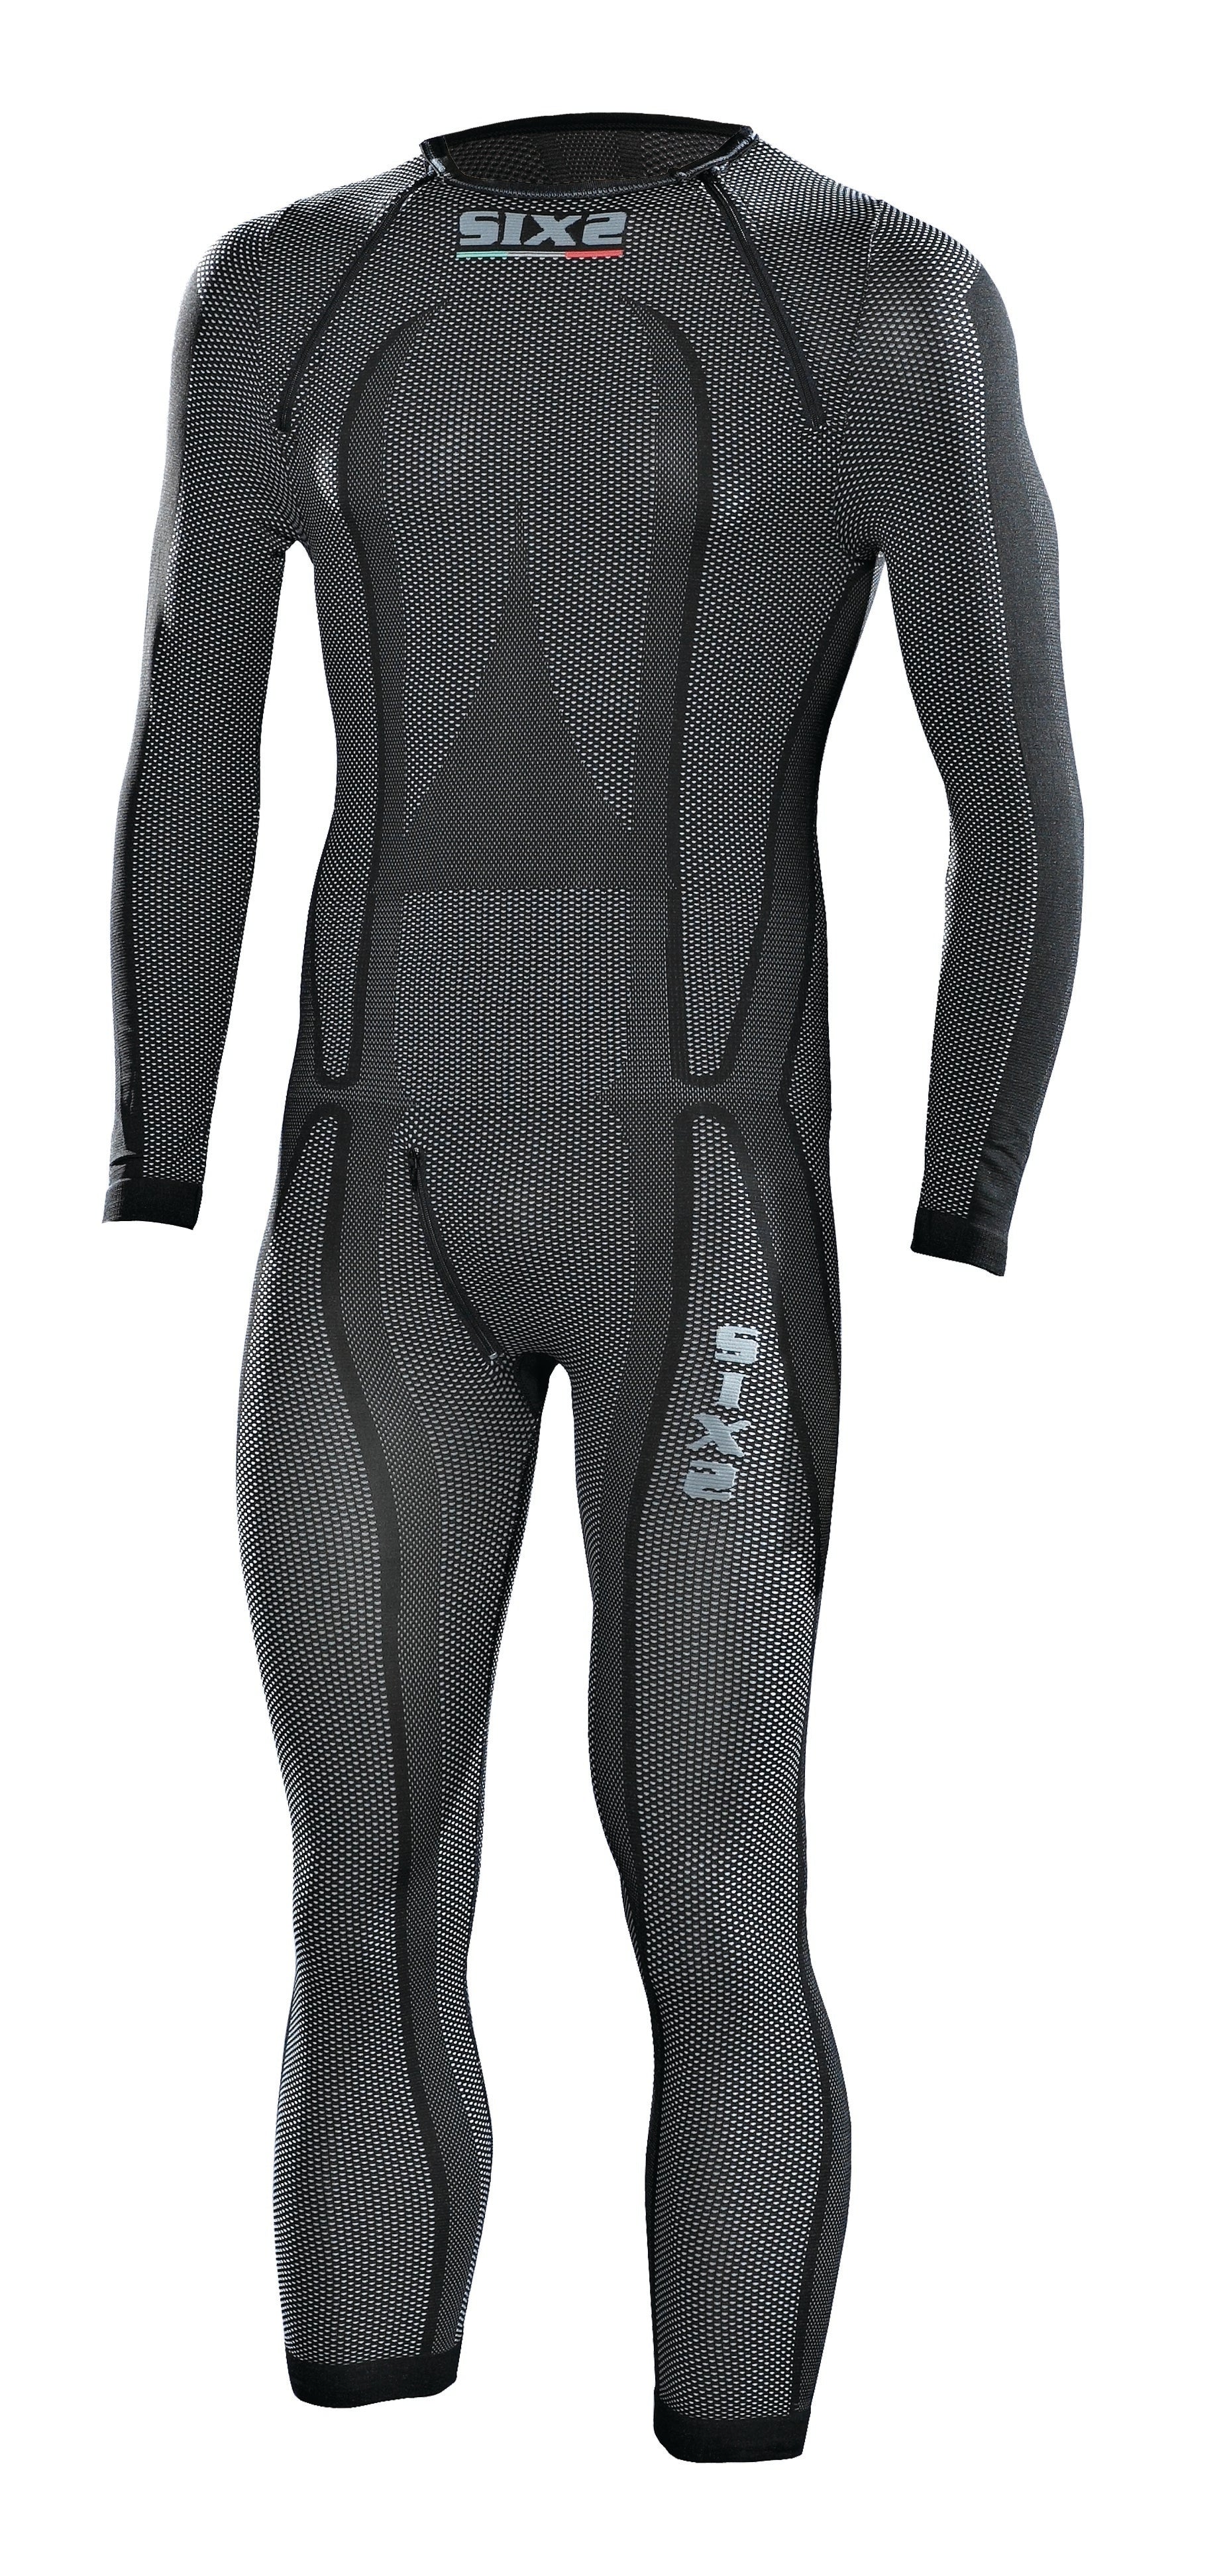 Sixs - STXL One-piece SuperLight Carbon Underwear undersuit